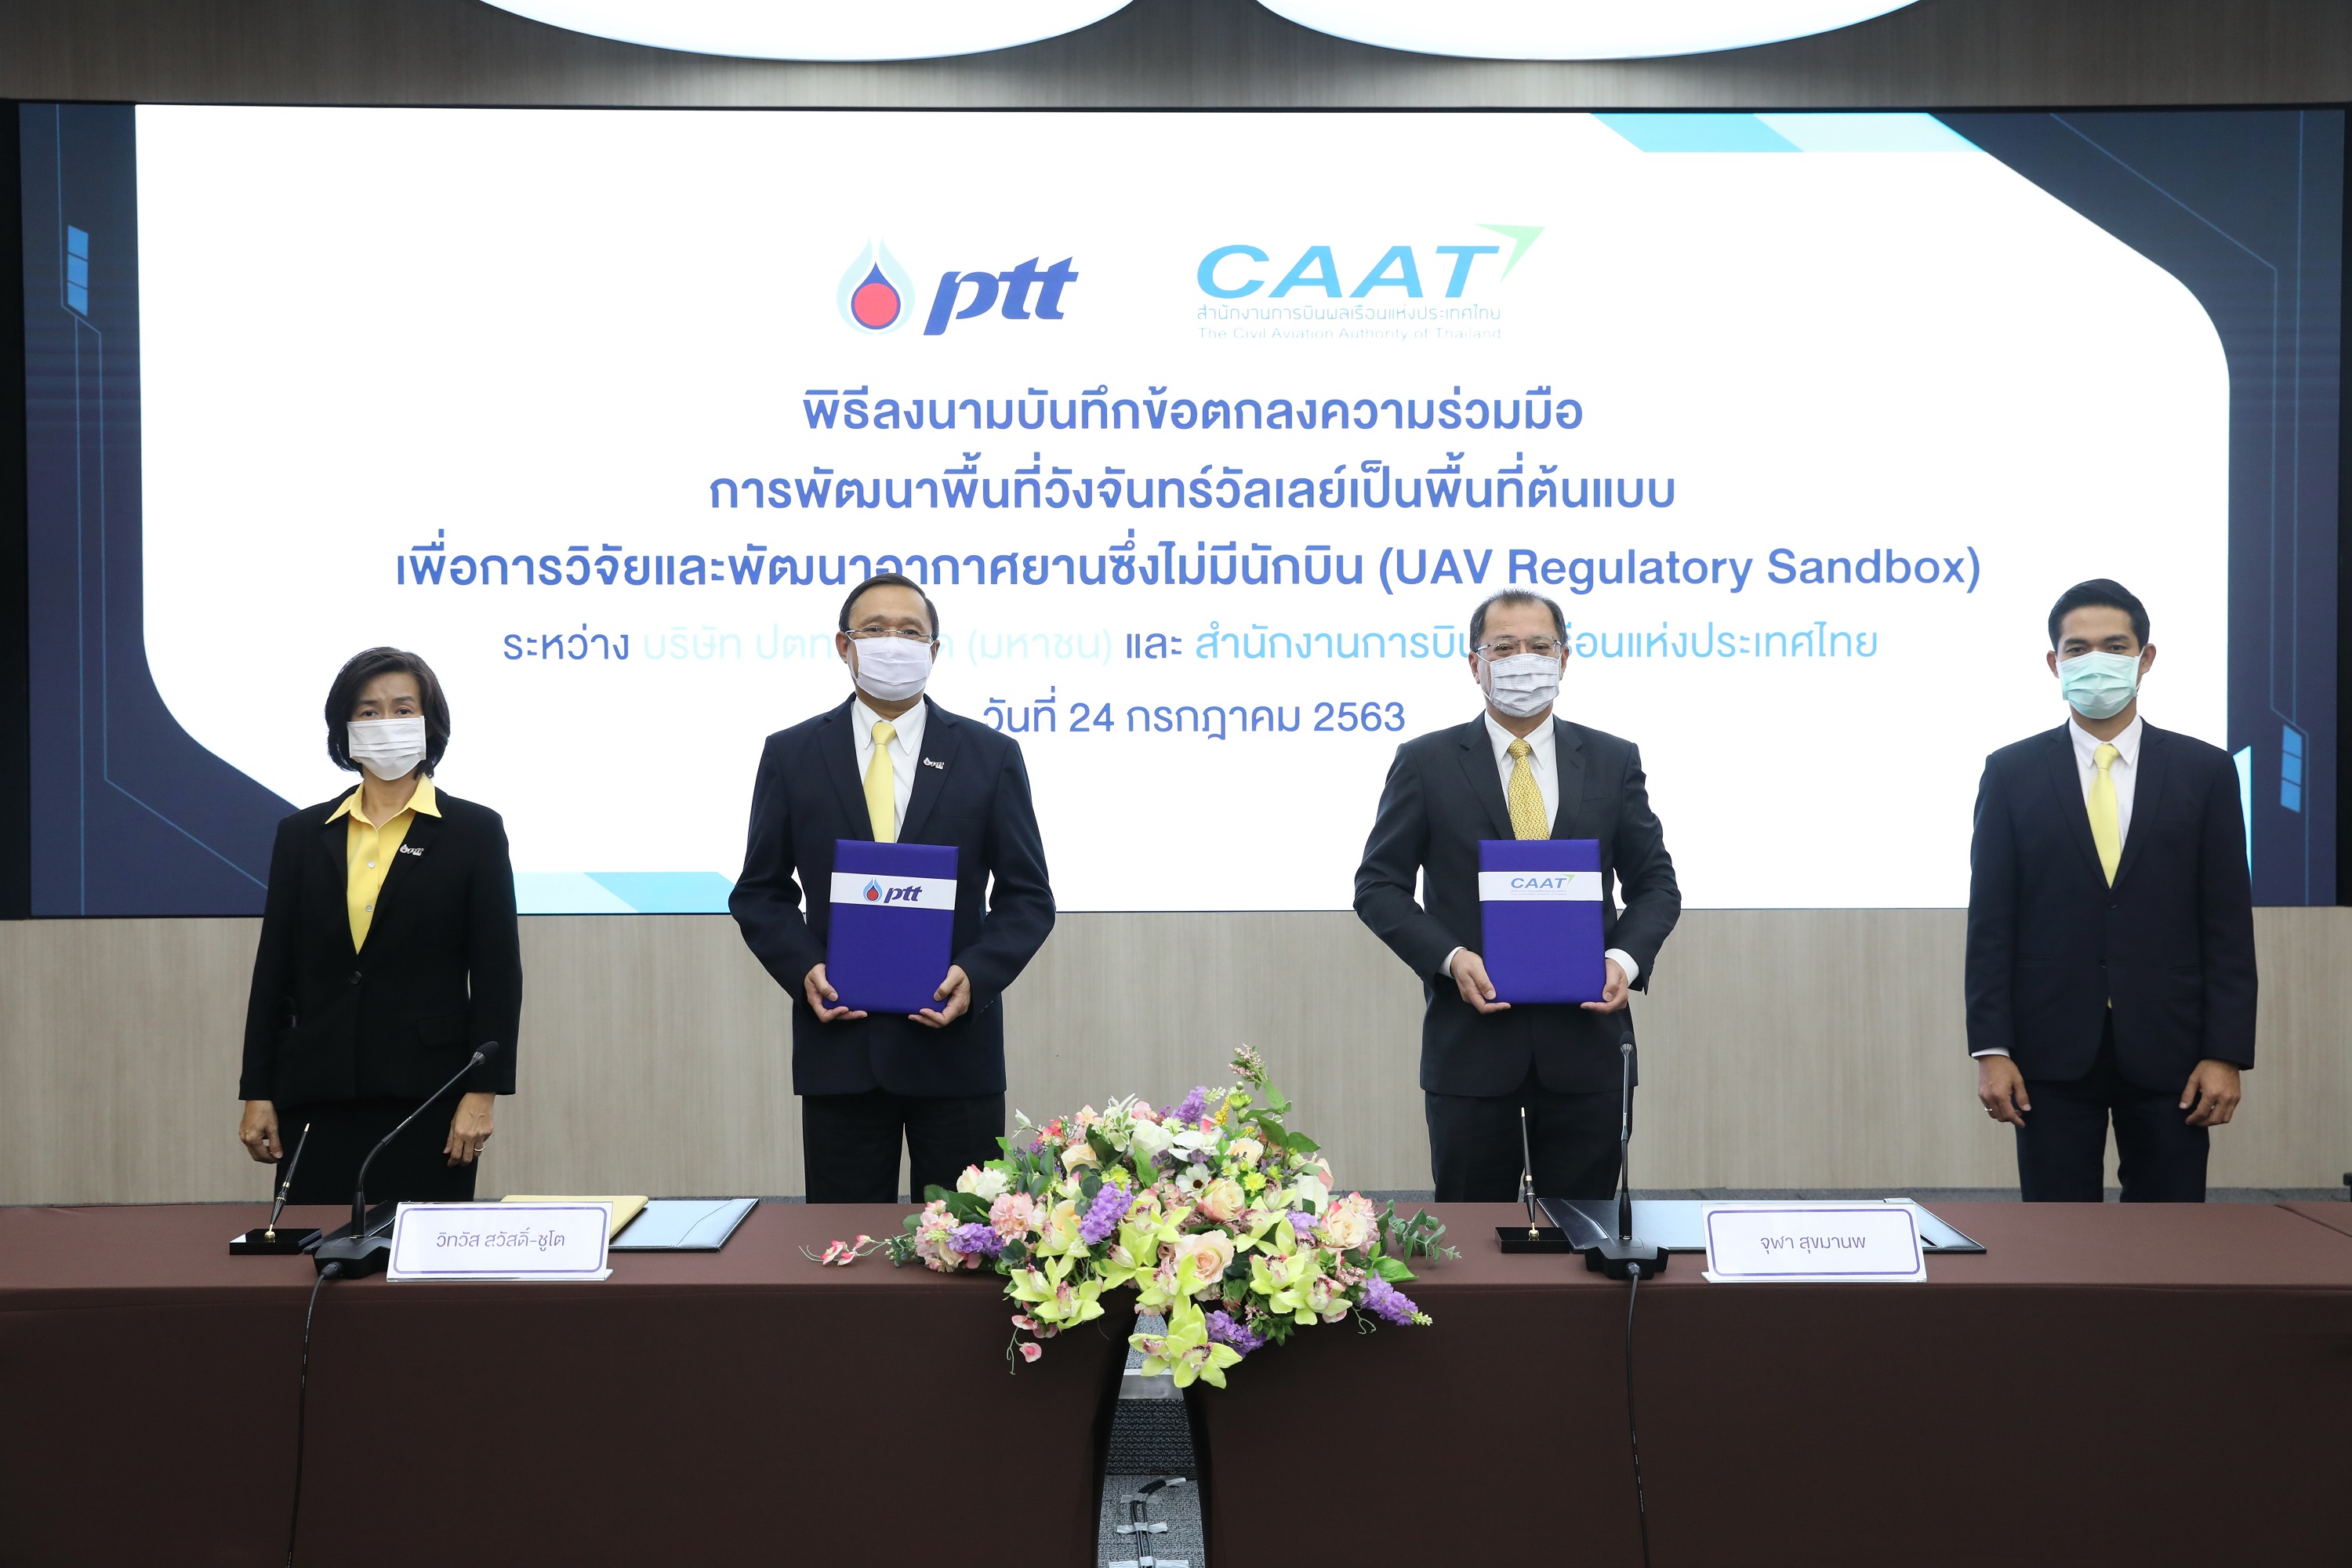 ภาพข่าว: ปตท. จับมือ CAAT พัฒนาพื้นที่ EECi@วังจันทร์วัลเลย์ เป็นต้นแบบการวิจัยและพัฒนาอากาศยานไร้คนขับ ที่แรกของประเทศไทย